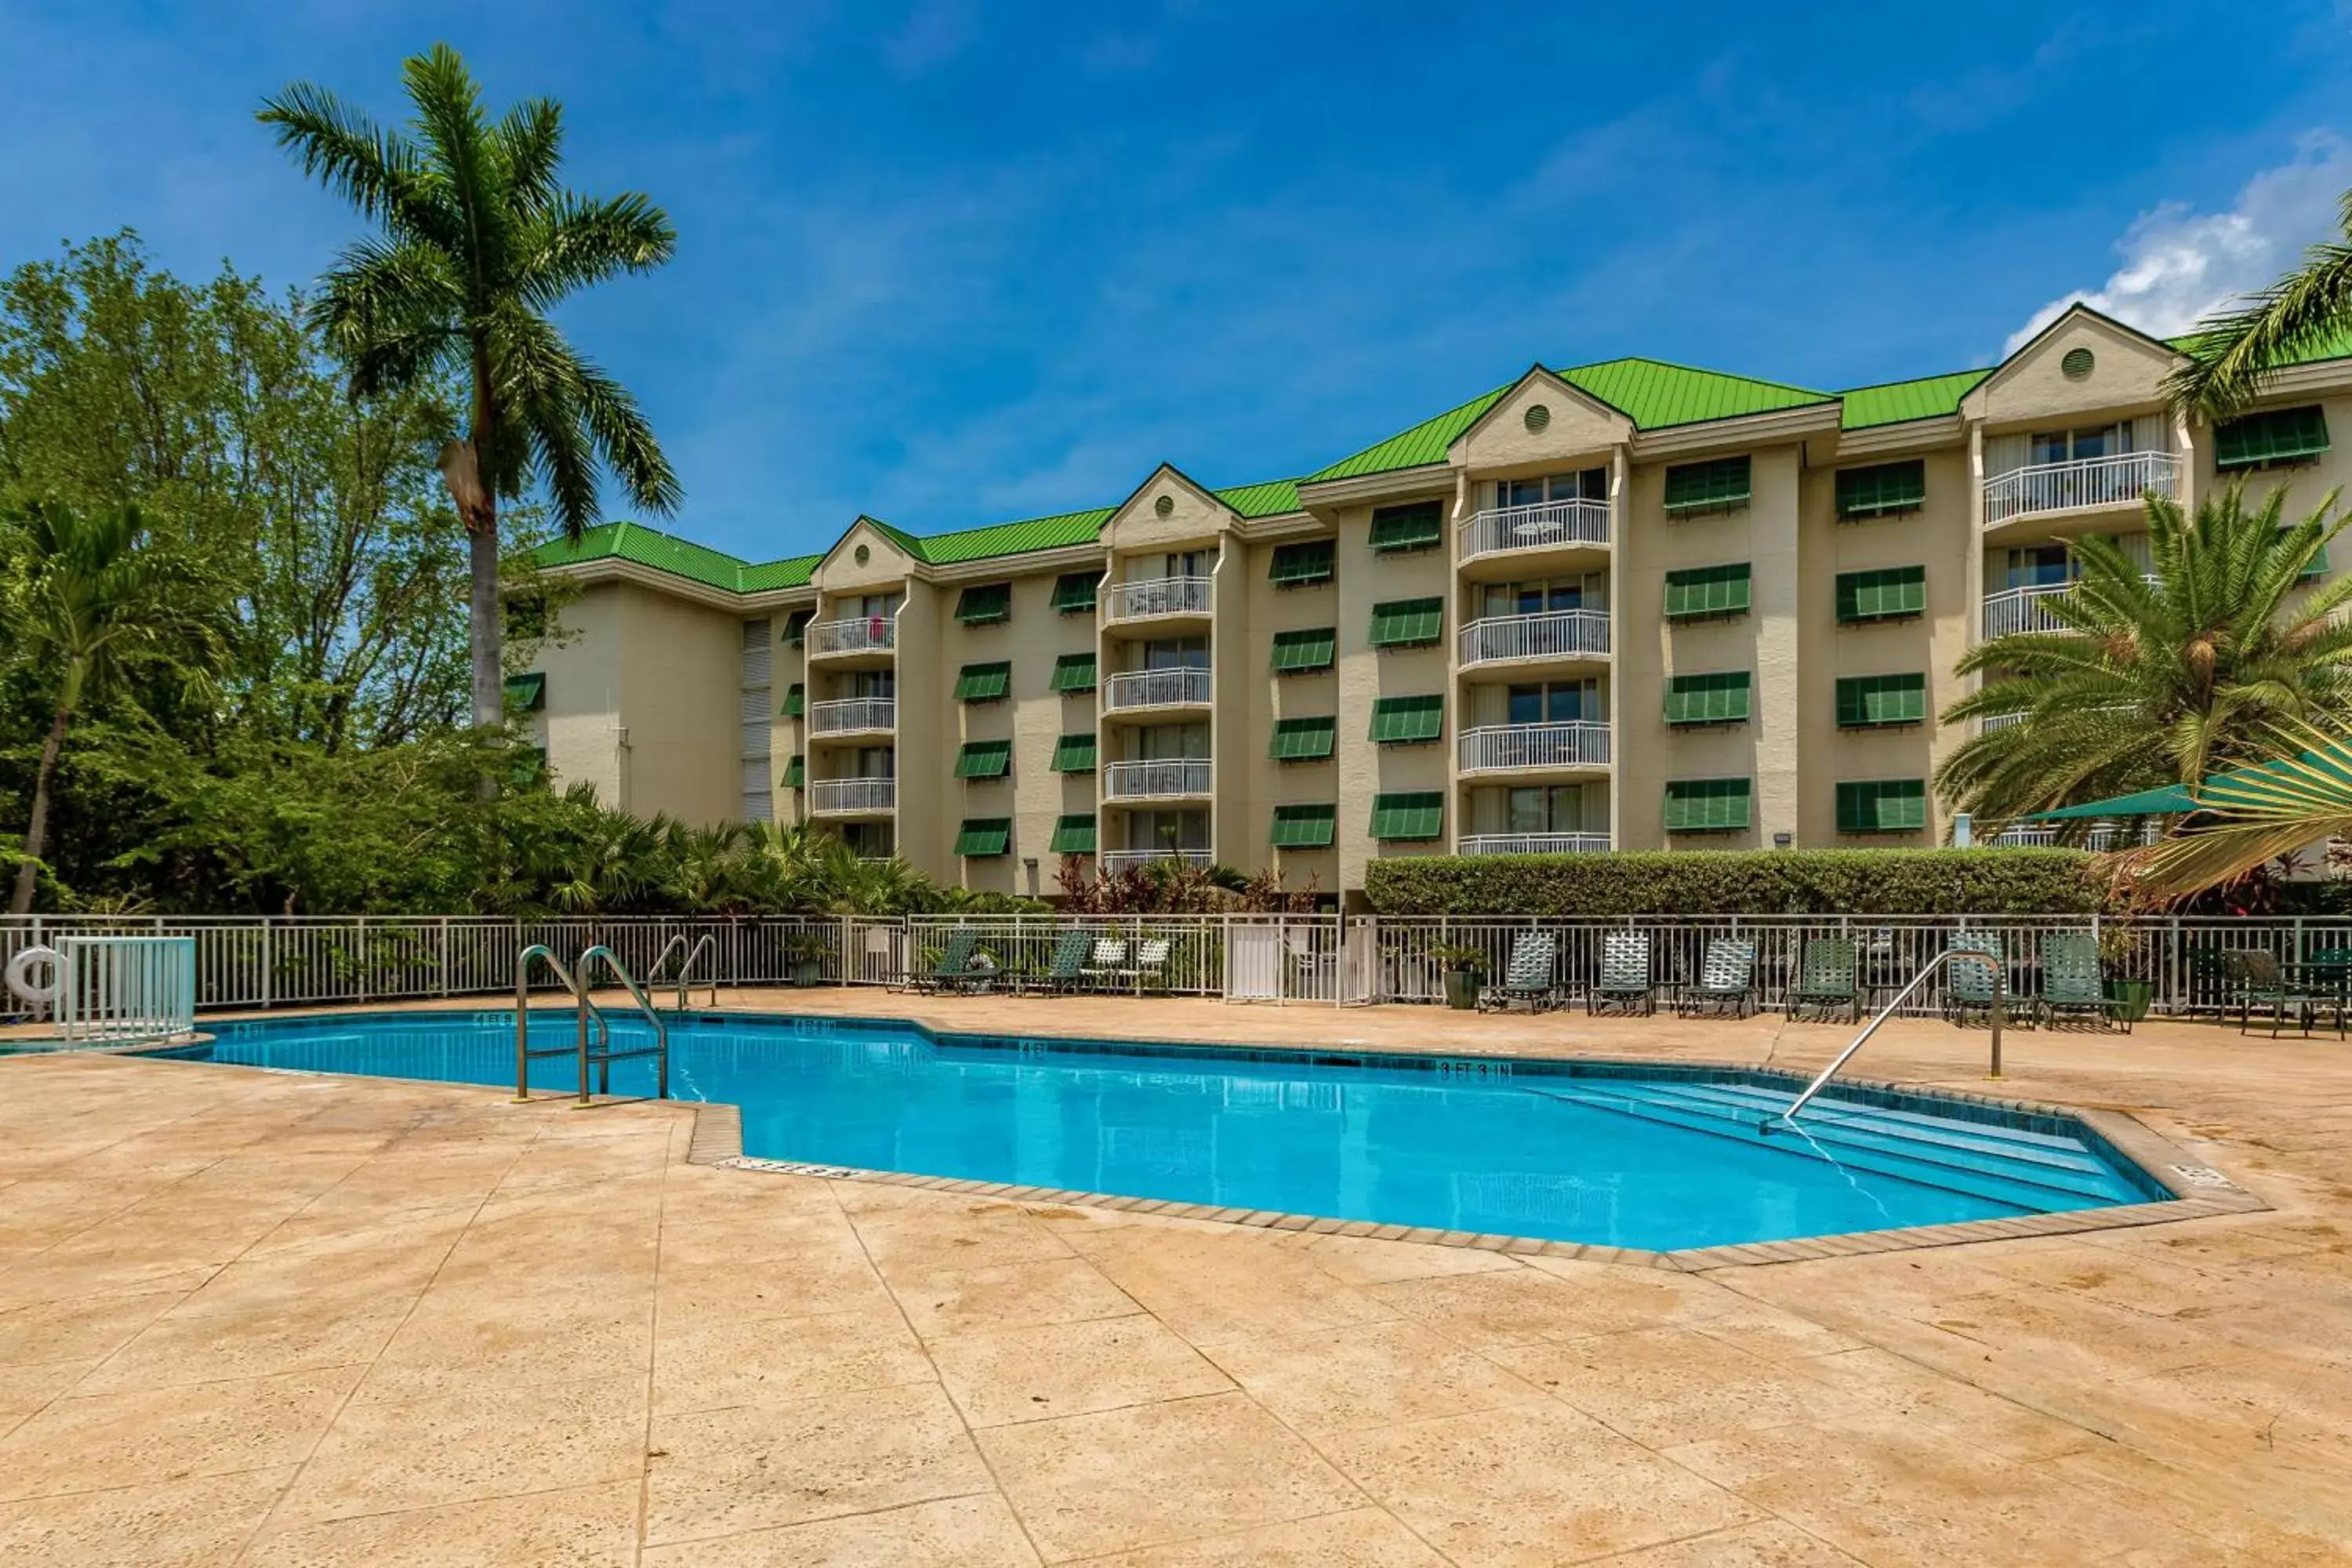 Swimming Pool in Sunrise Suites Barbados Suite #204